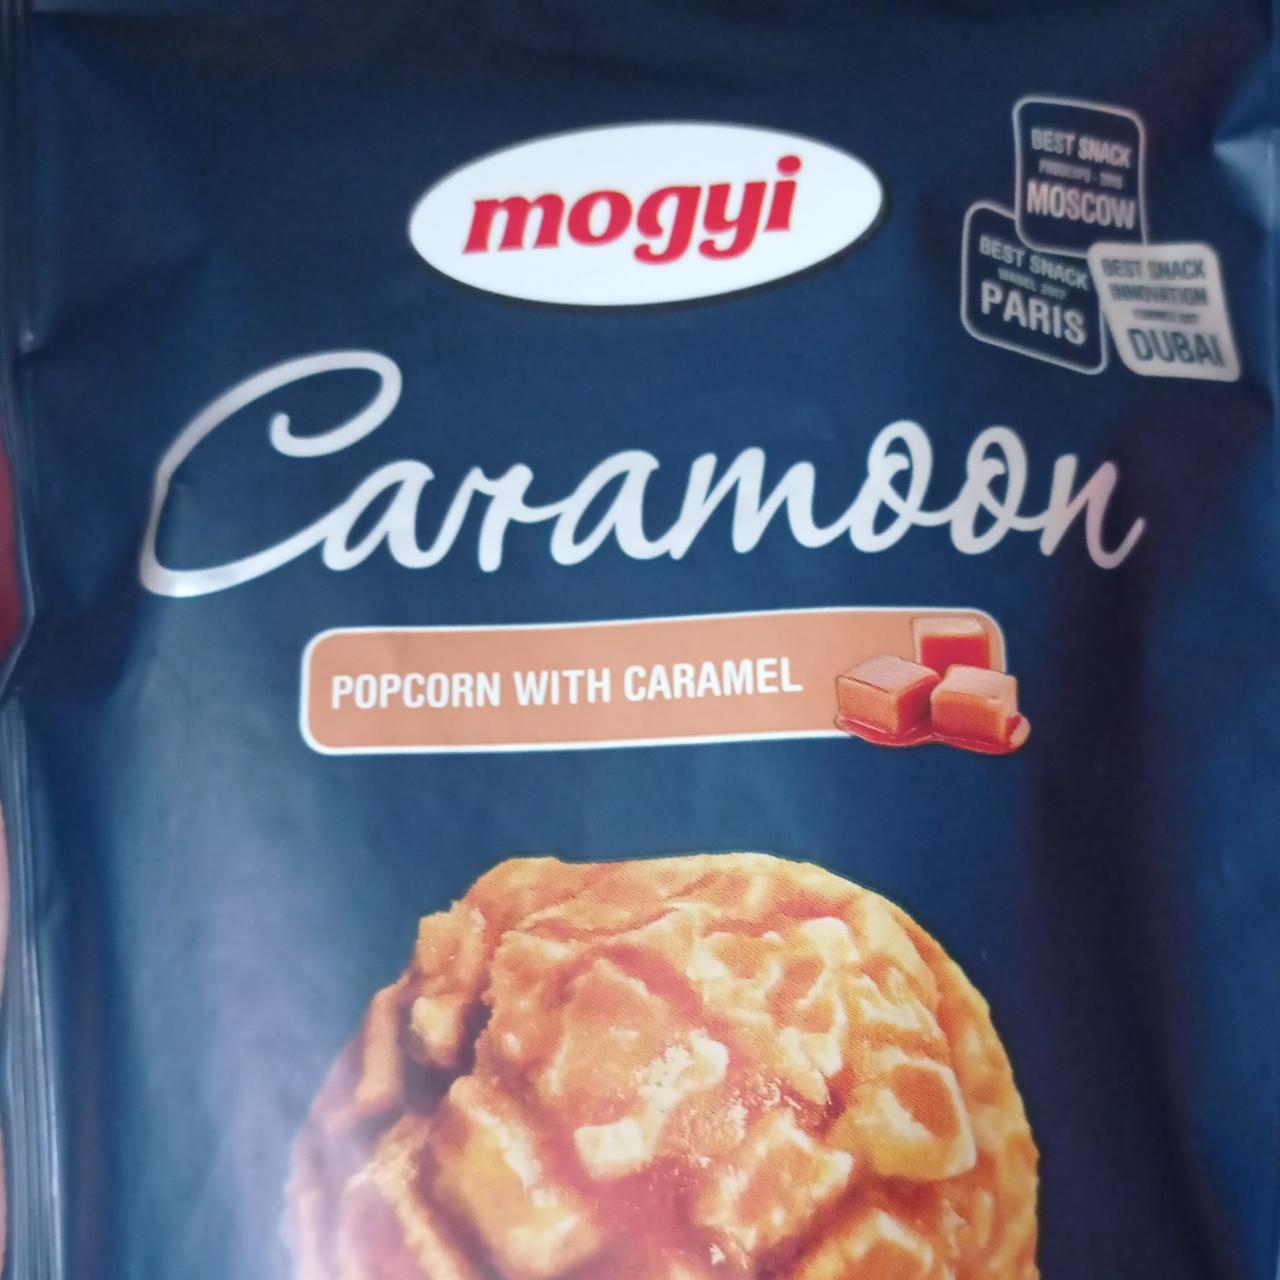 Фото - Попкорн со вкусом карамели Caramoon Mogyi